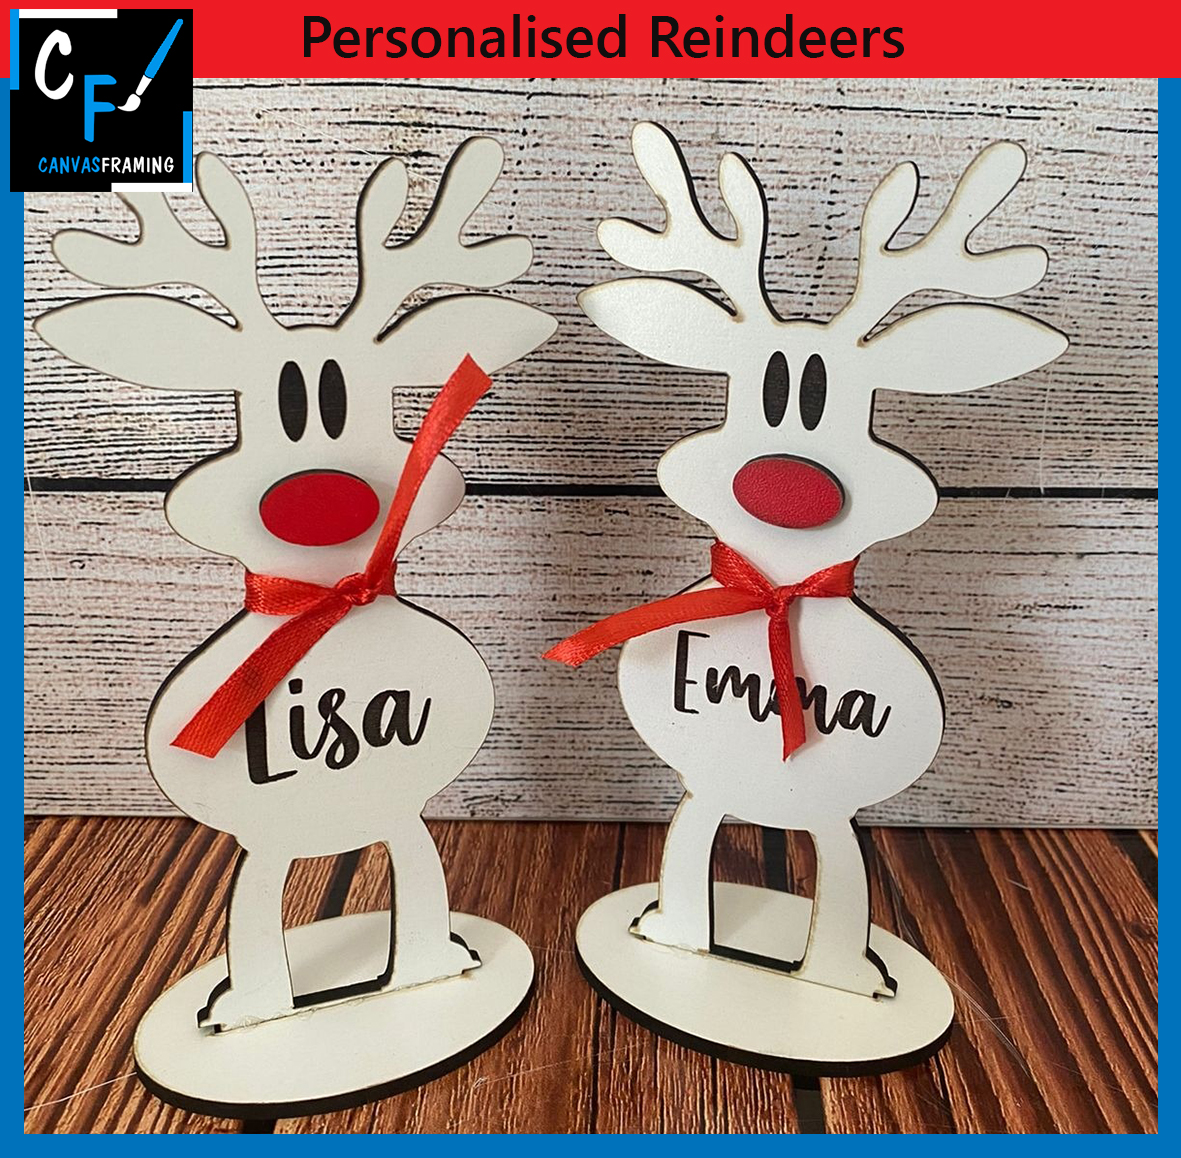 Personalised Reindeers